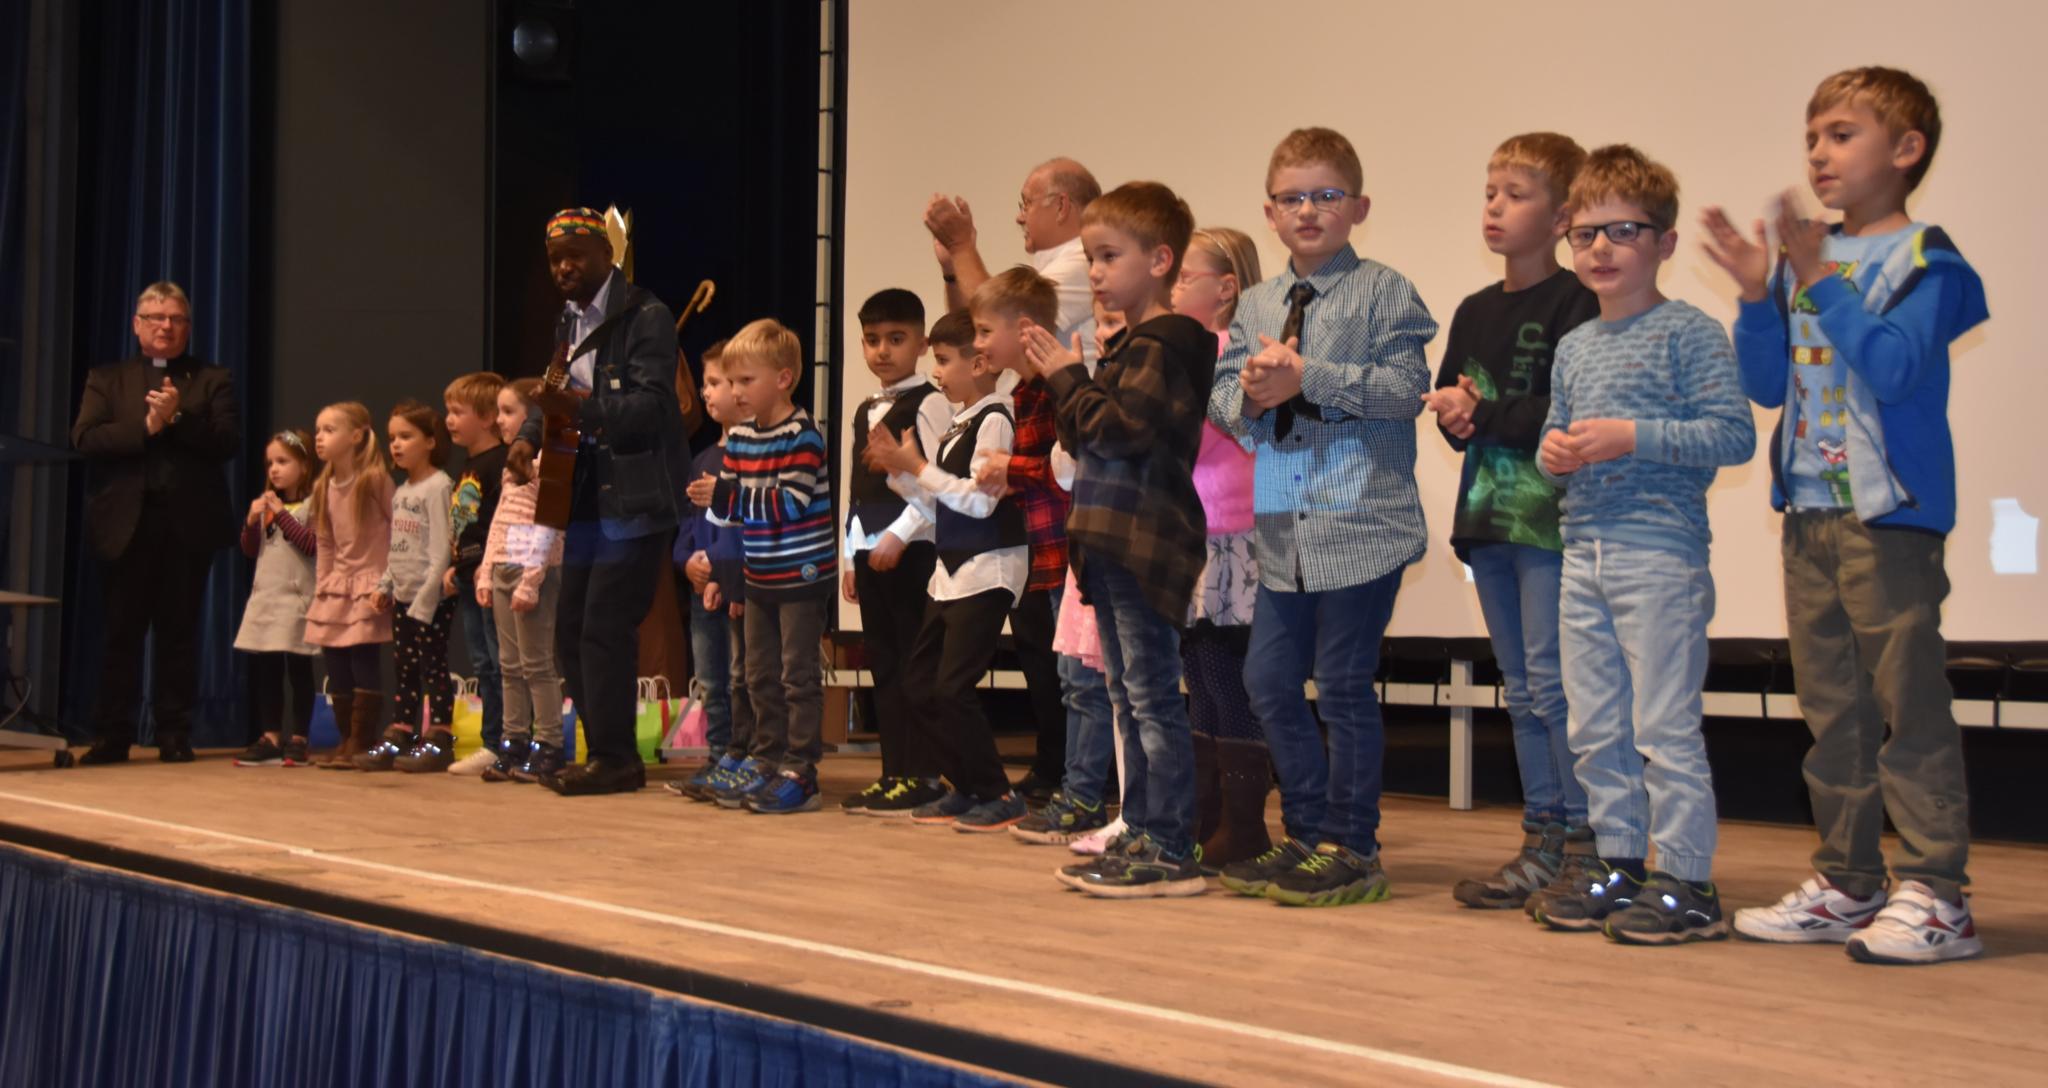 Am 15. Oktober feierten die Kinder der Kita Winterbach die Premiere ihres Films. Foto: Ute Kirch